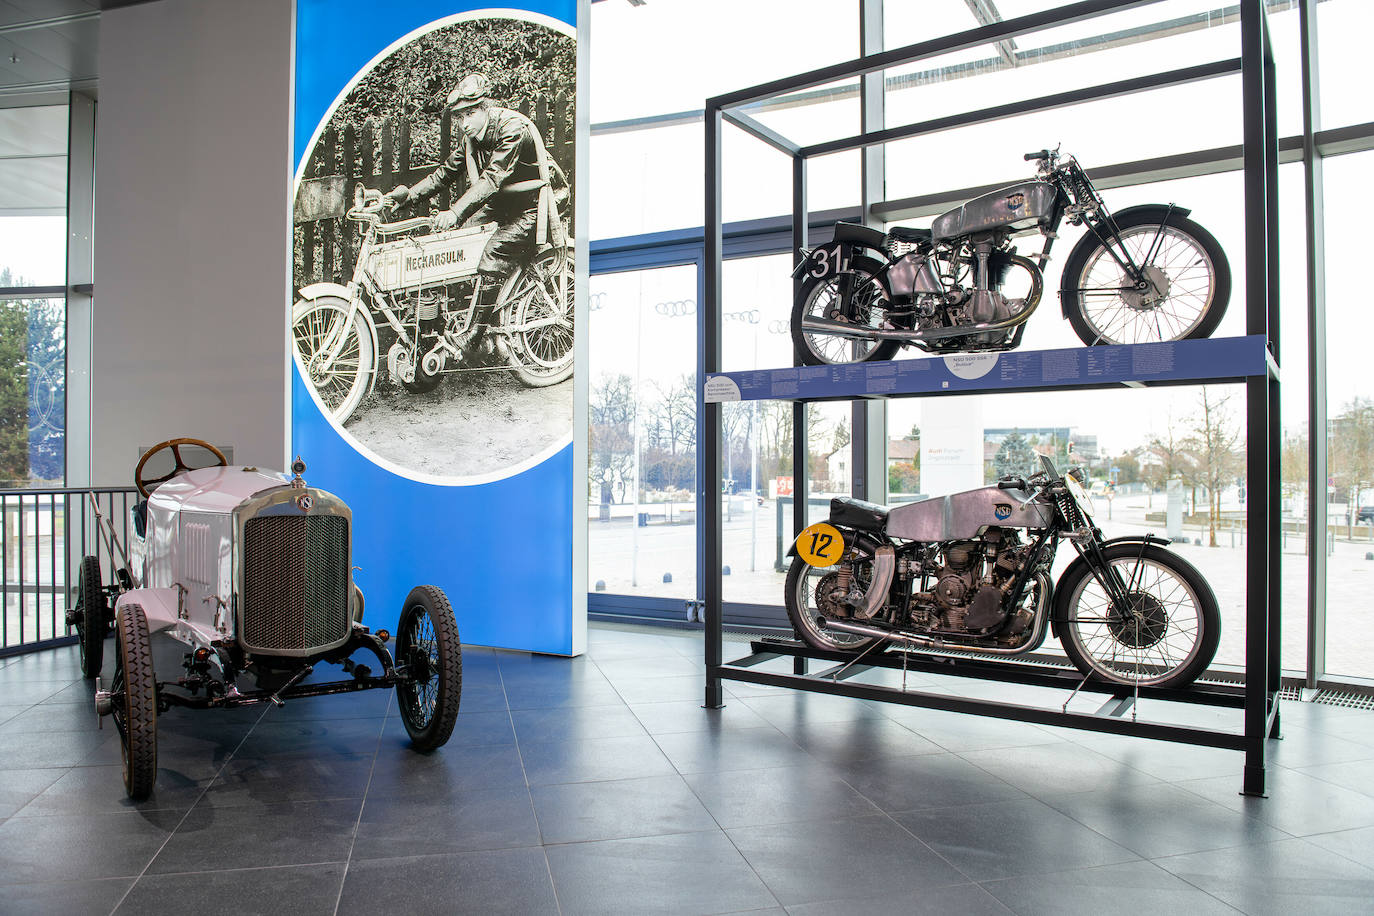 Fotos: Fotogalería: visita virtual al museo de la historia de Audi